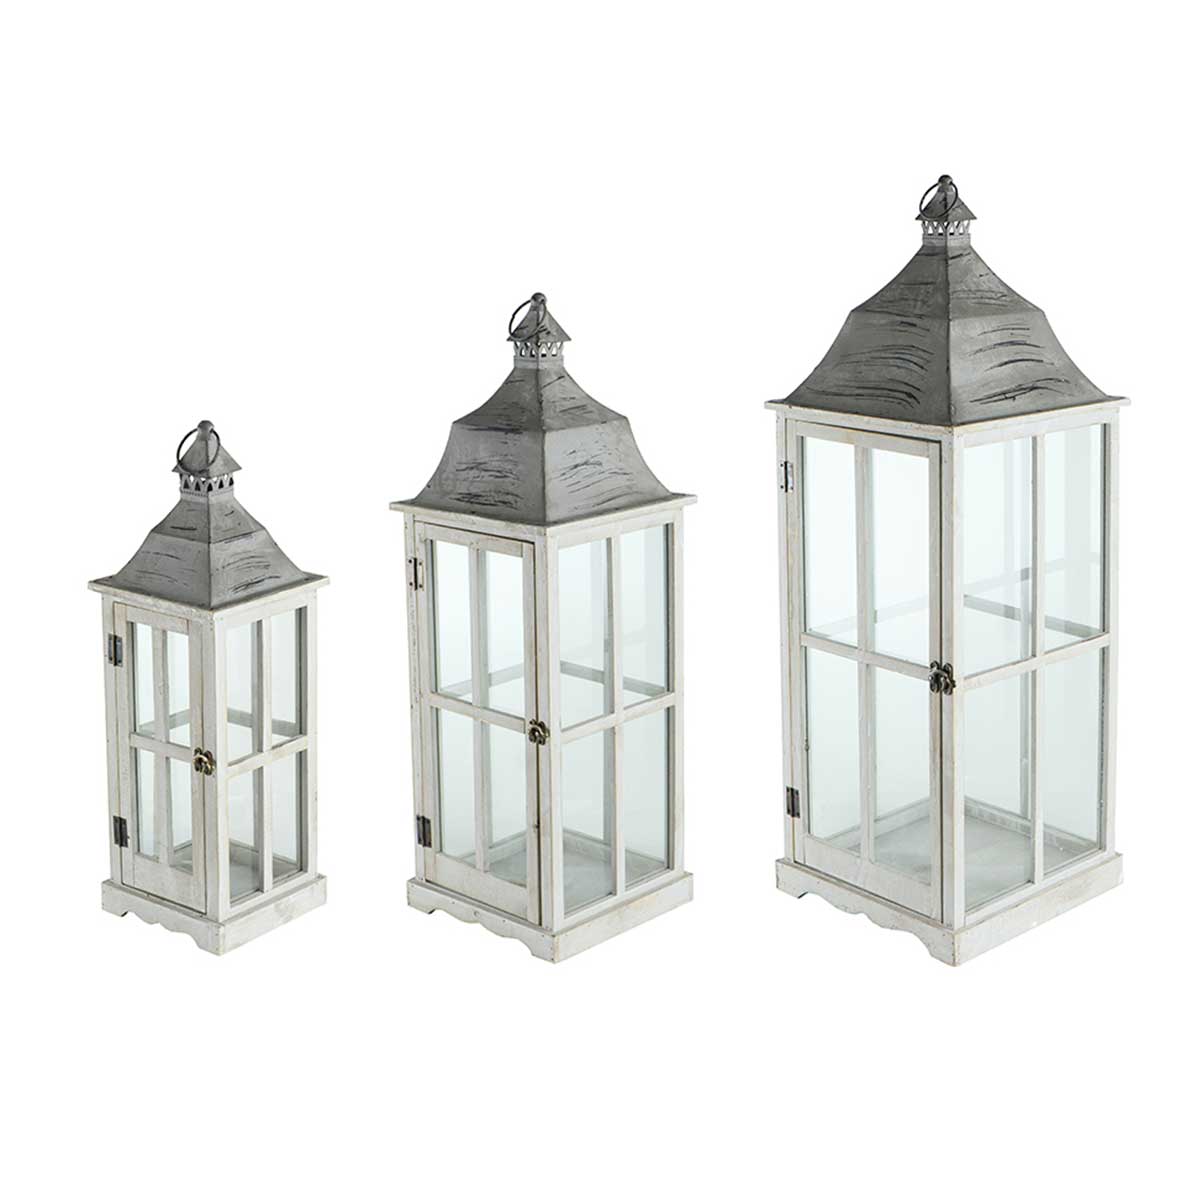 A & B Grey Window Scape Lanterns